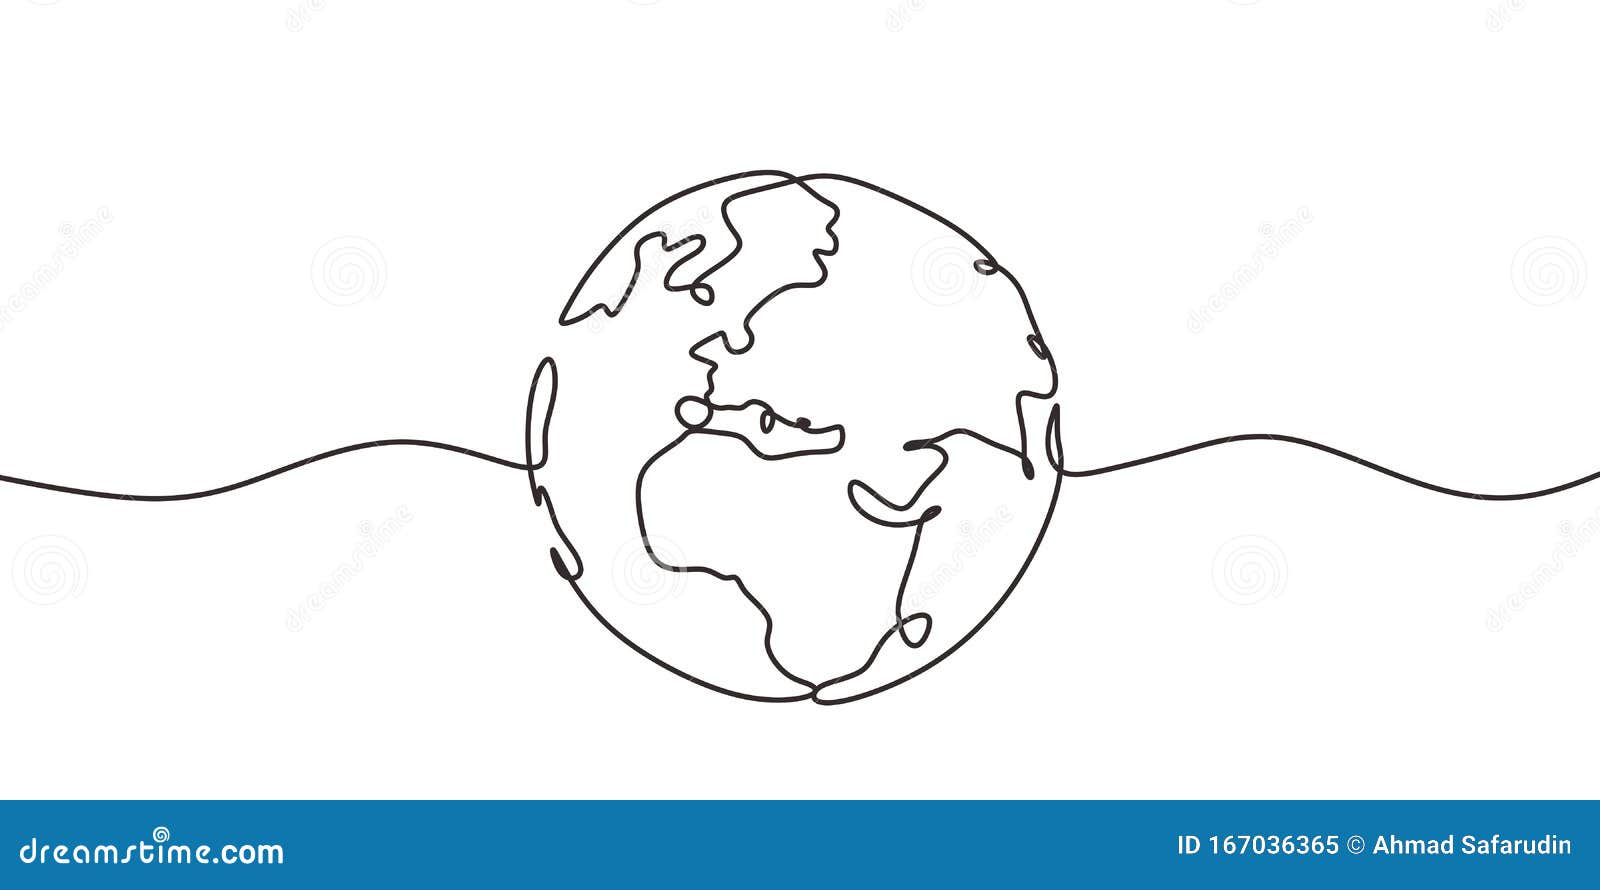 envelop idioom meerderheid Line Drawing Earth Stock Illustrations – 20,518 Line Drawing Earth Stock  Illustrations, Vectors & Clipart - Dreamstime